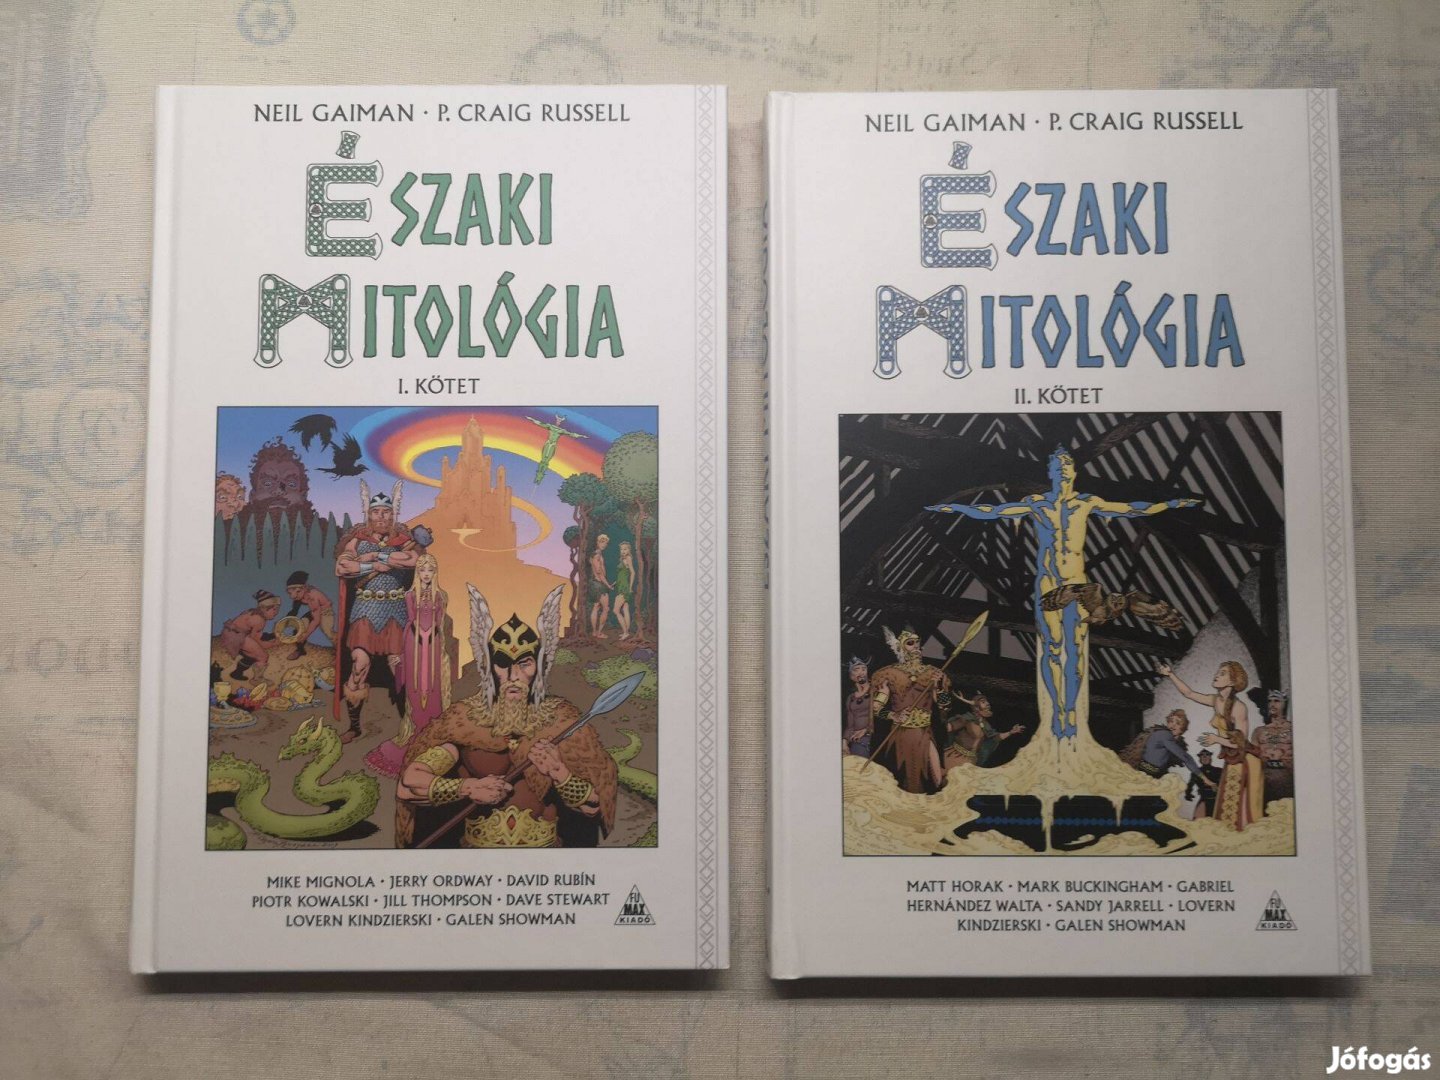 Neil Gaiman - Északi mitológia 1-2